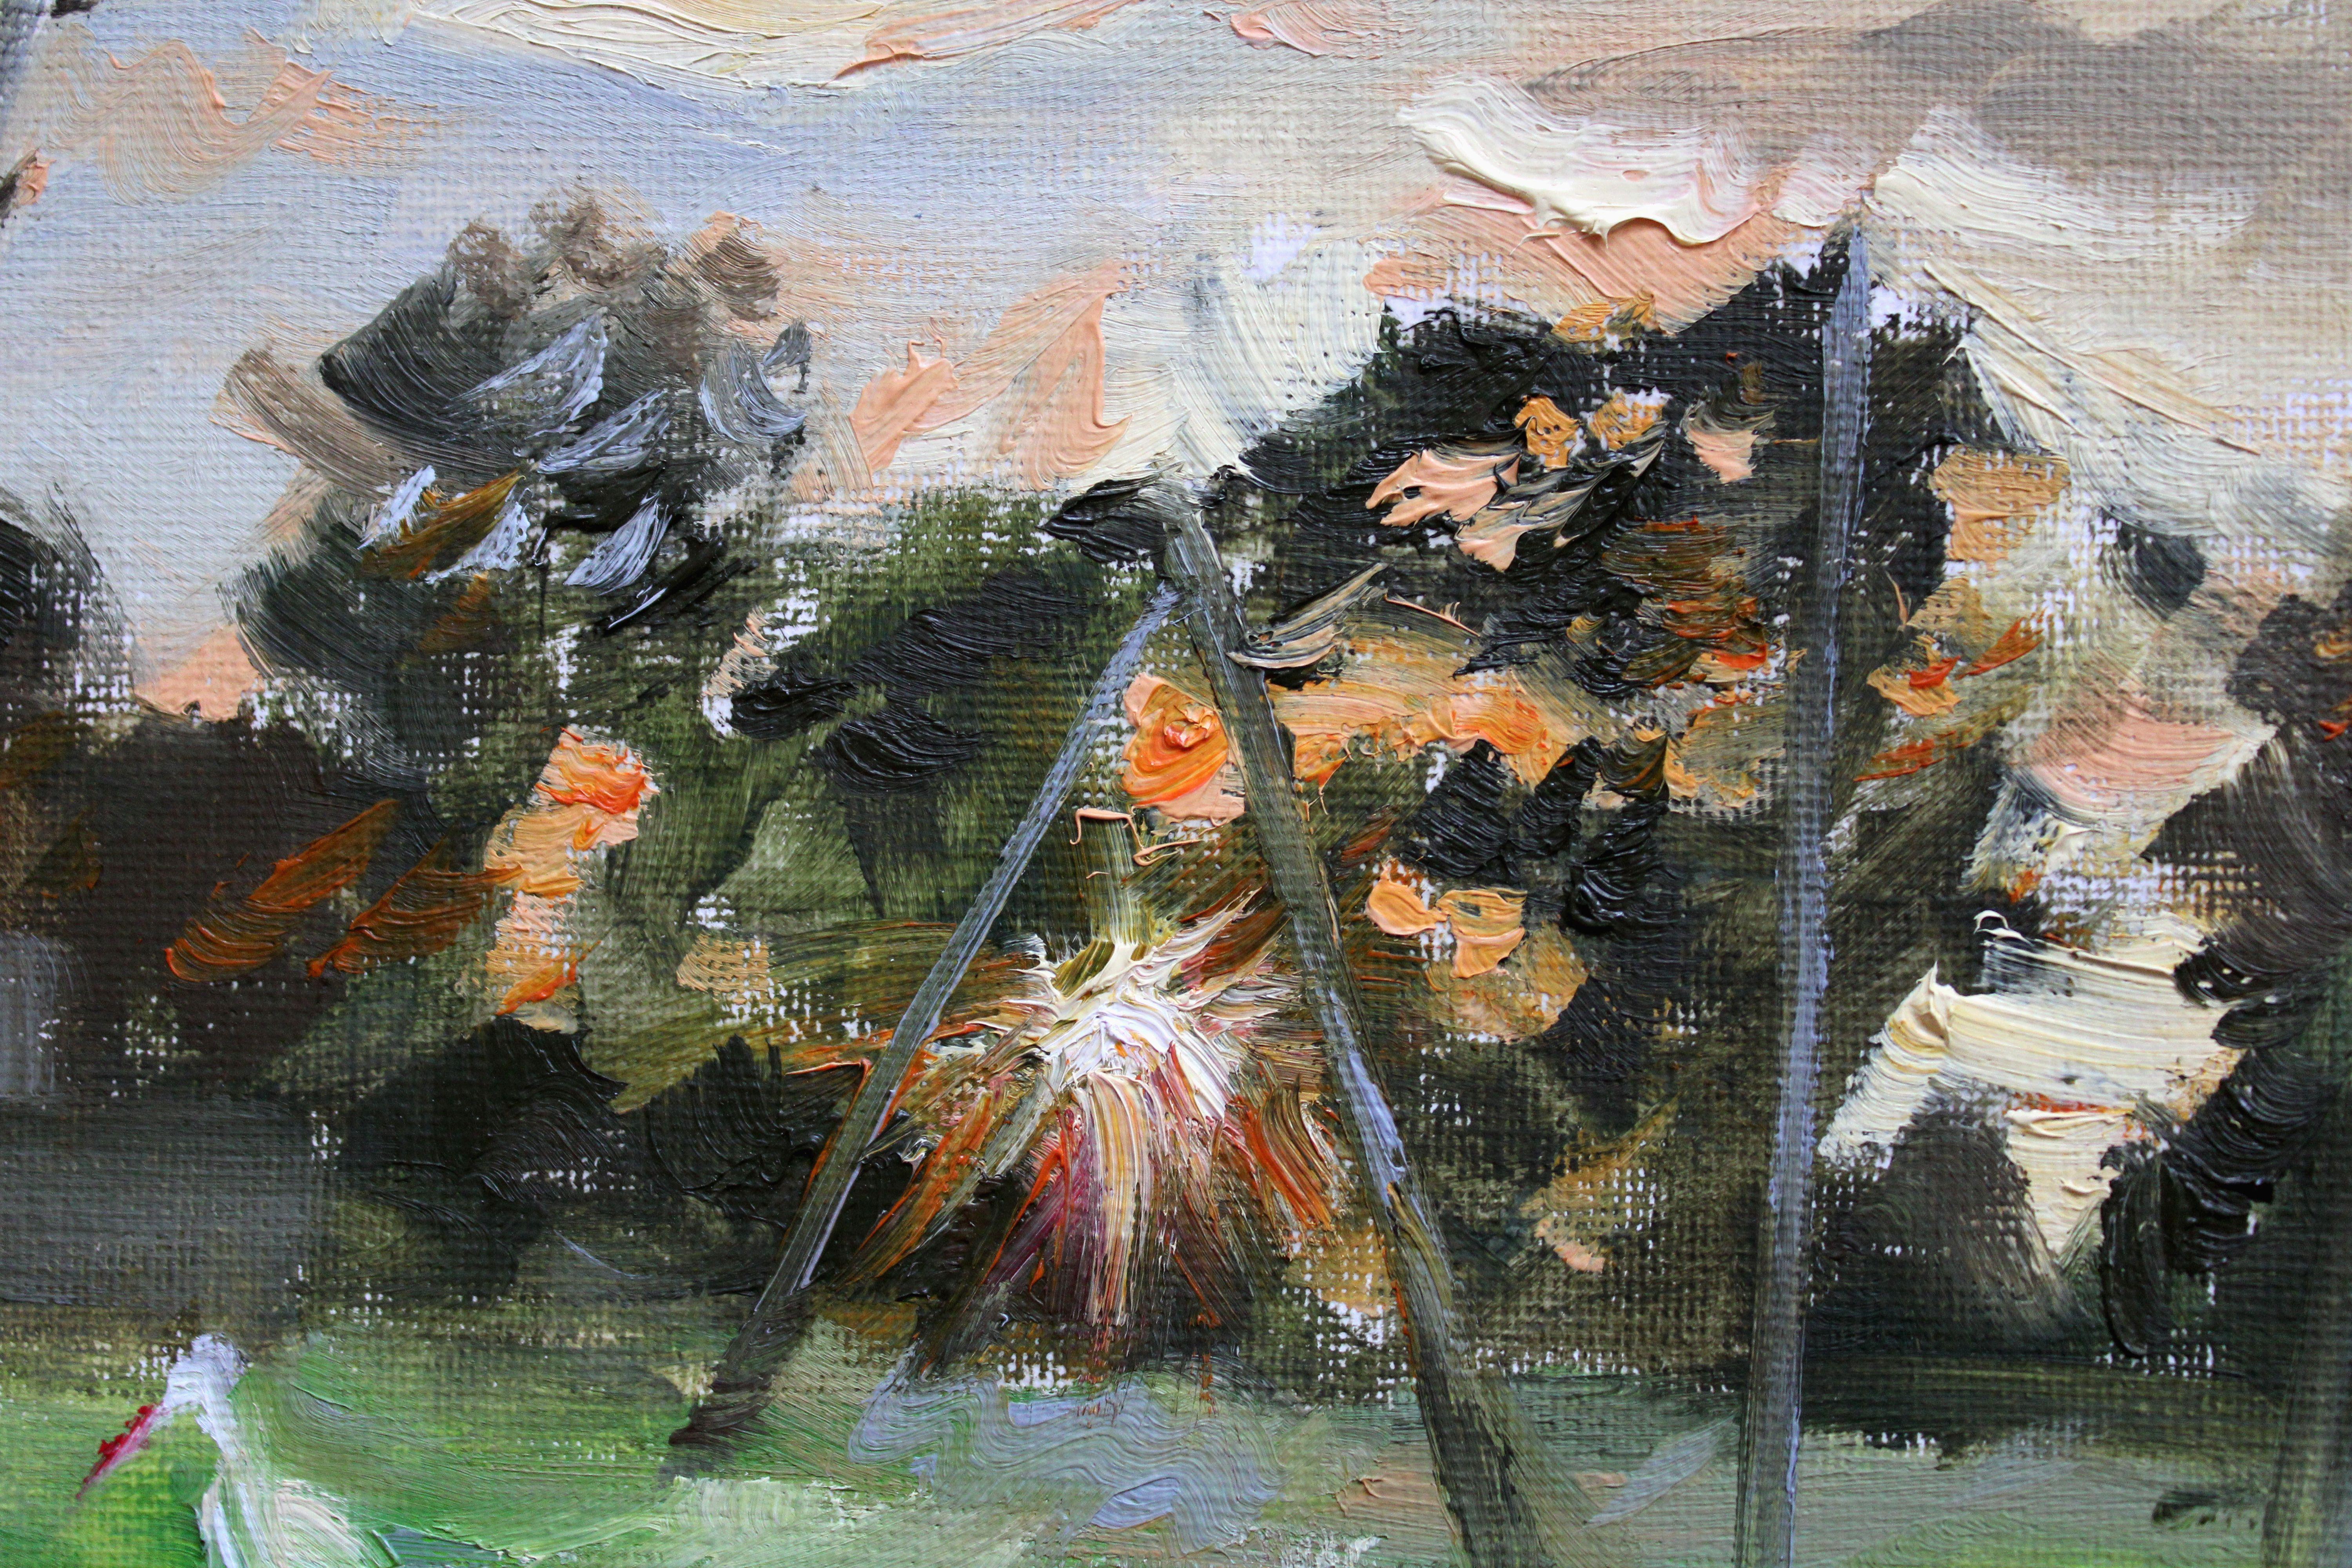 Le dernier rayon. 2023. Toile, carton, huile, 17 x 23 cm
Paysage d'une chaude soirée d'été avec une cigogne dans une petite ville de Lettonie, Townes. Peinture en plein air de petit format 

Alyona Prokofyeva (1988)

A partir de 2016 nom de famille